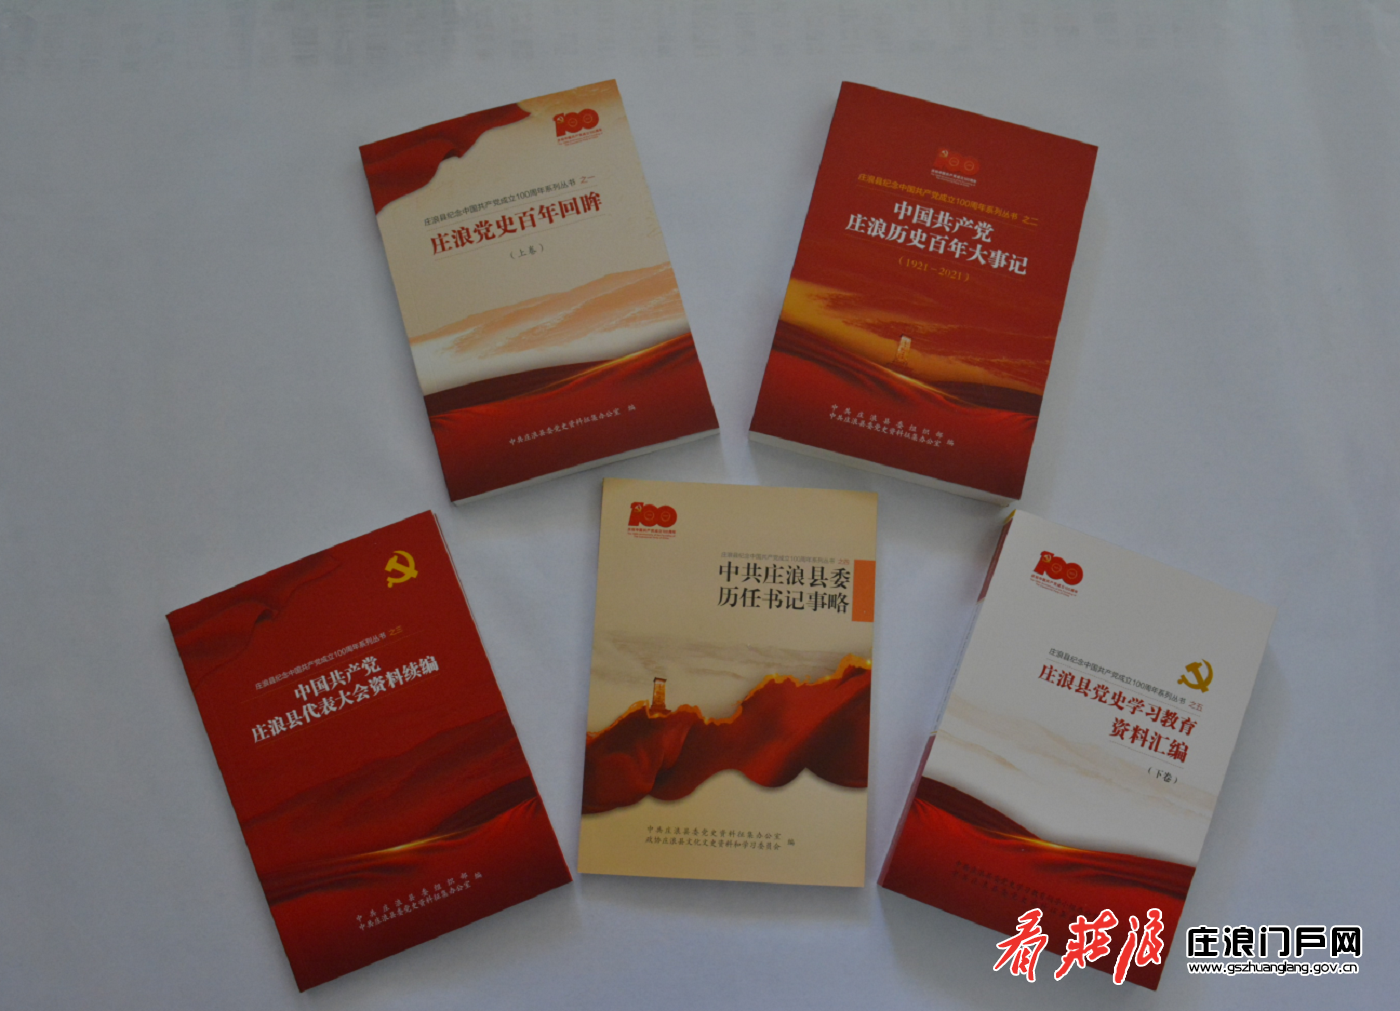 《庄浪县庆祝中国共产党成立100周年系列丛书》出版发行